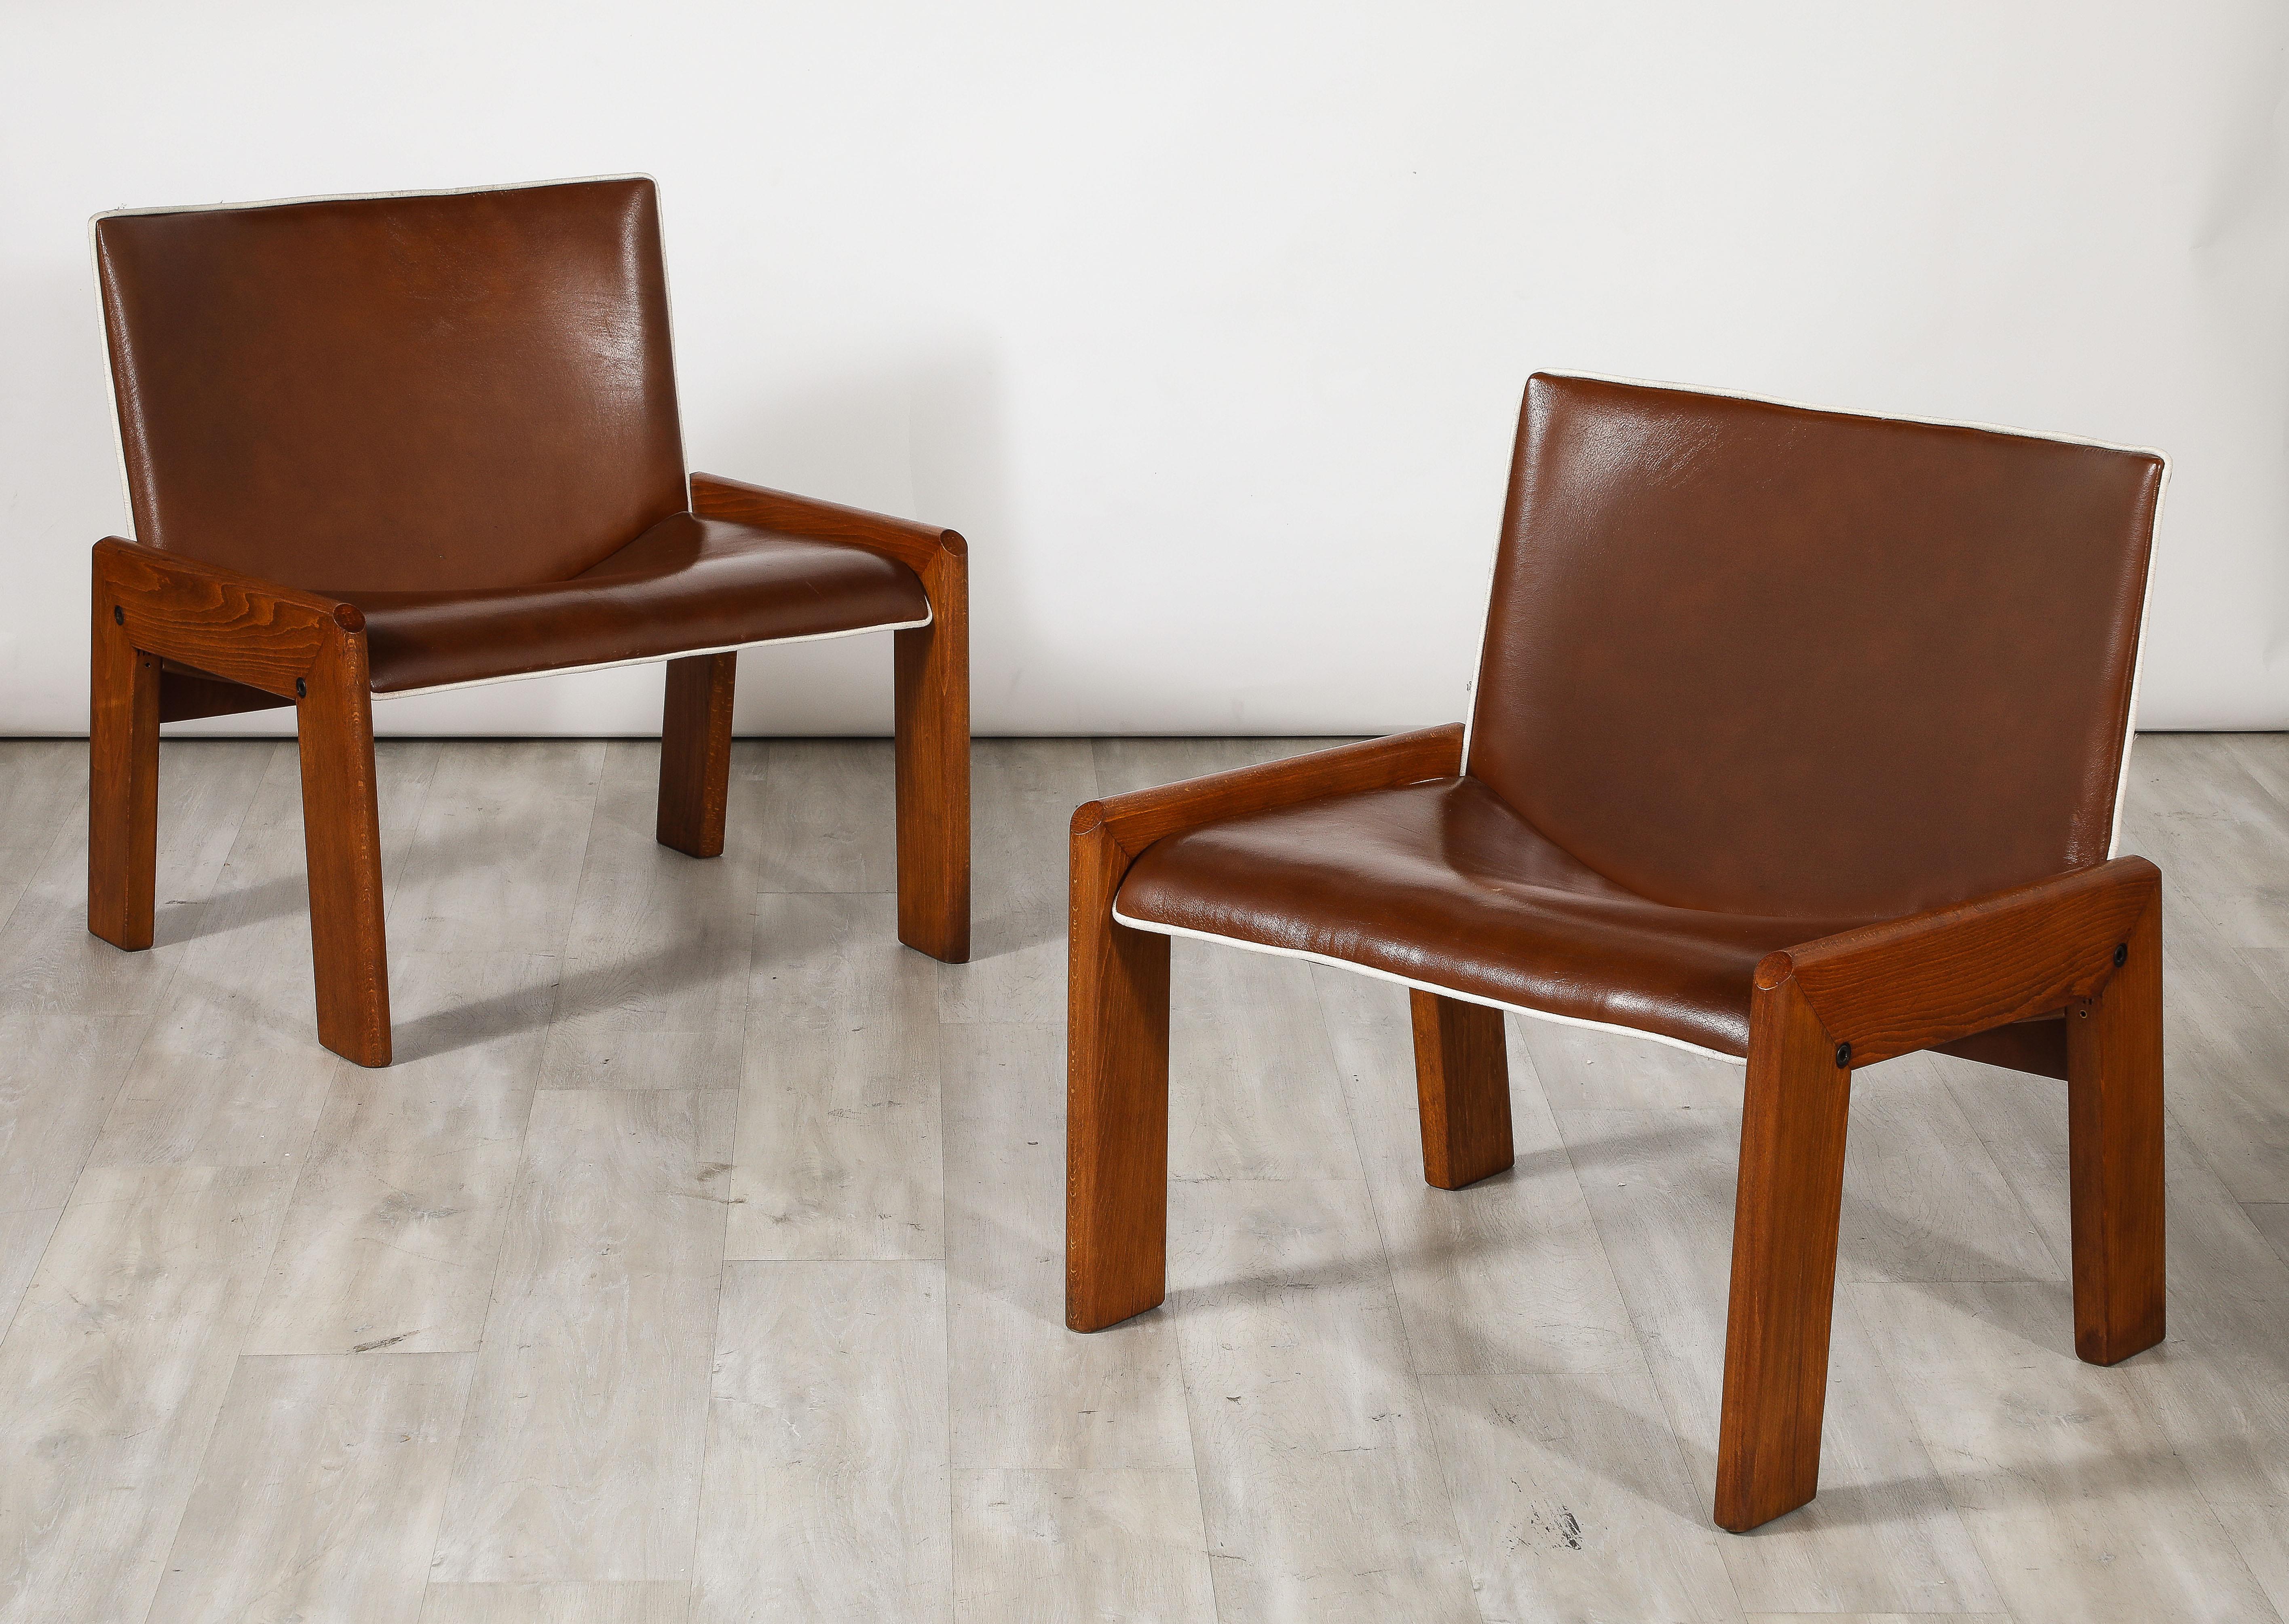 Ein schickes Paar Beistellstühle aus Walnussholz von B&T Gruppo Industriale Salotti. Die breiten schokoladenbraunen Ledersitze und -rückenlehnen mit knackigen weißen Lederkedern stehen auf kantigen und stabilen Walnussbeinen.  Sehr komfortabel und